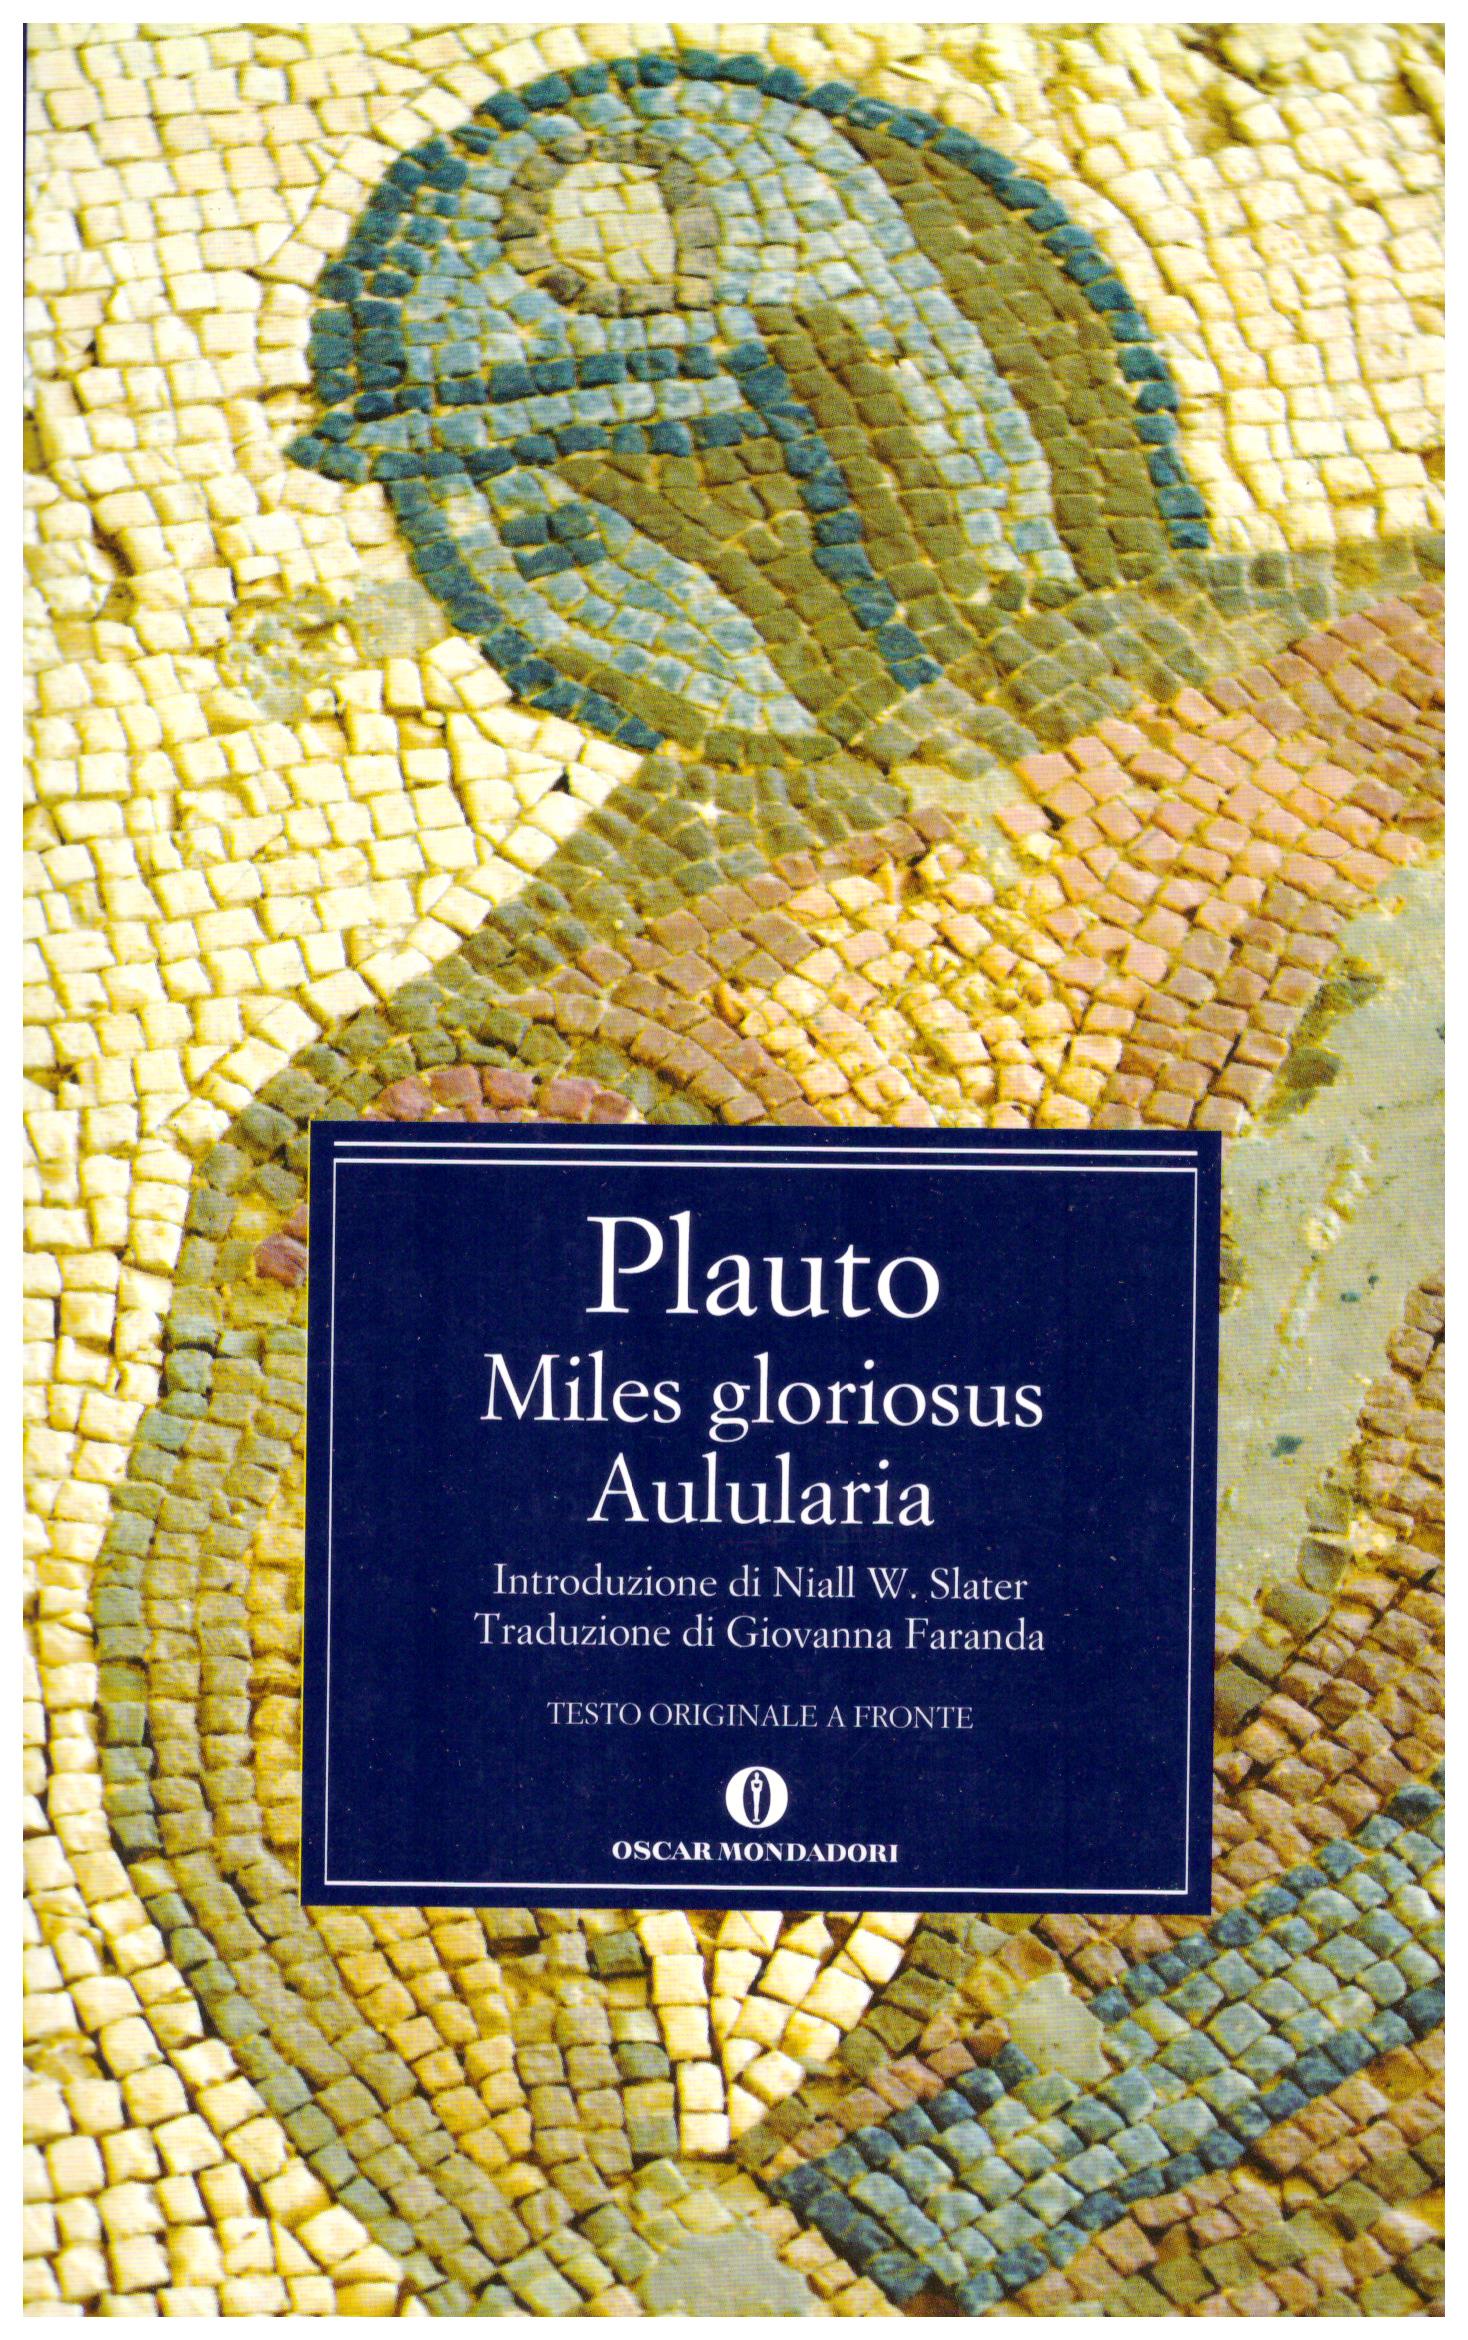 Titolo: Miles gloriosus, Aulularia  Autore:Plauto  Editore: oscar mondadori 2011